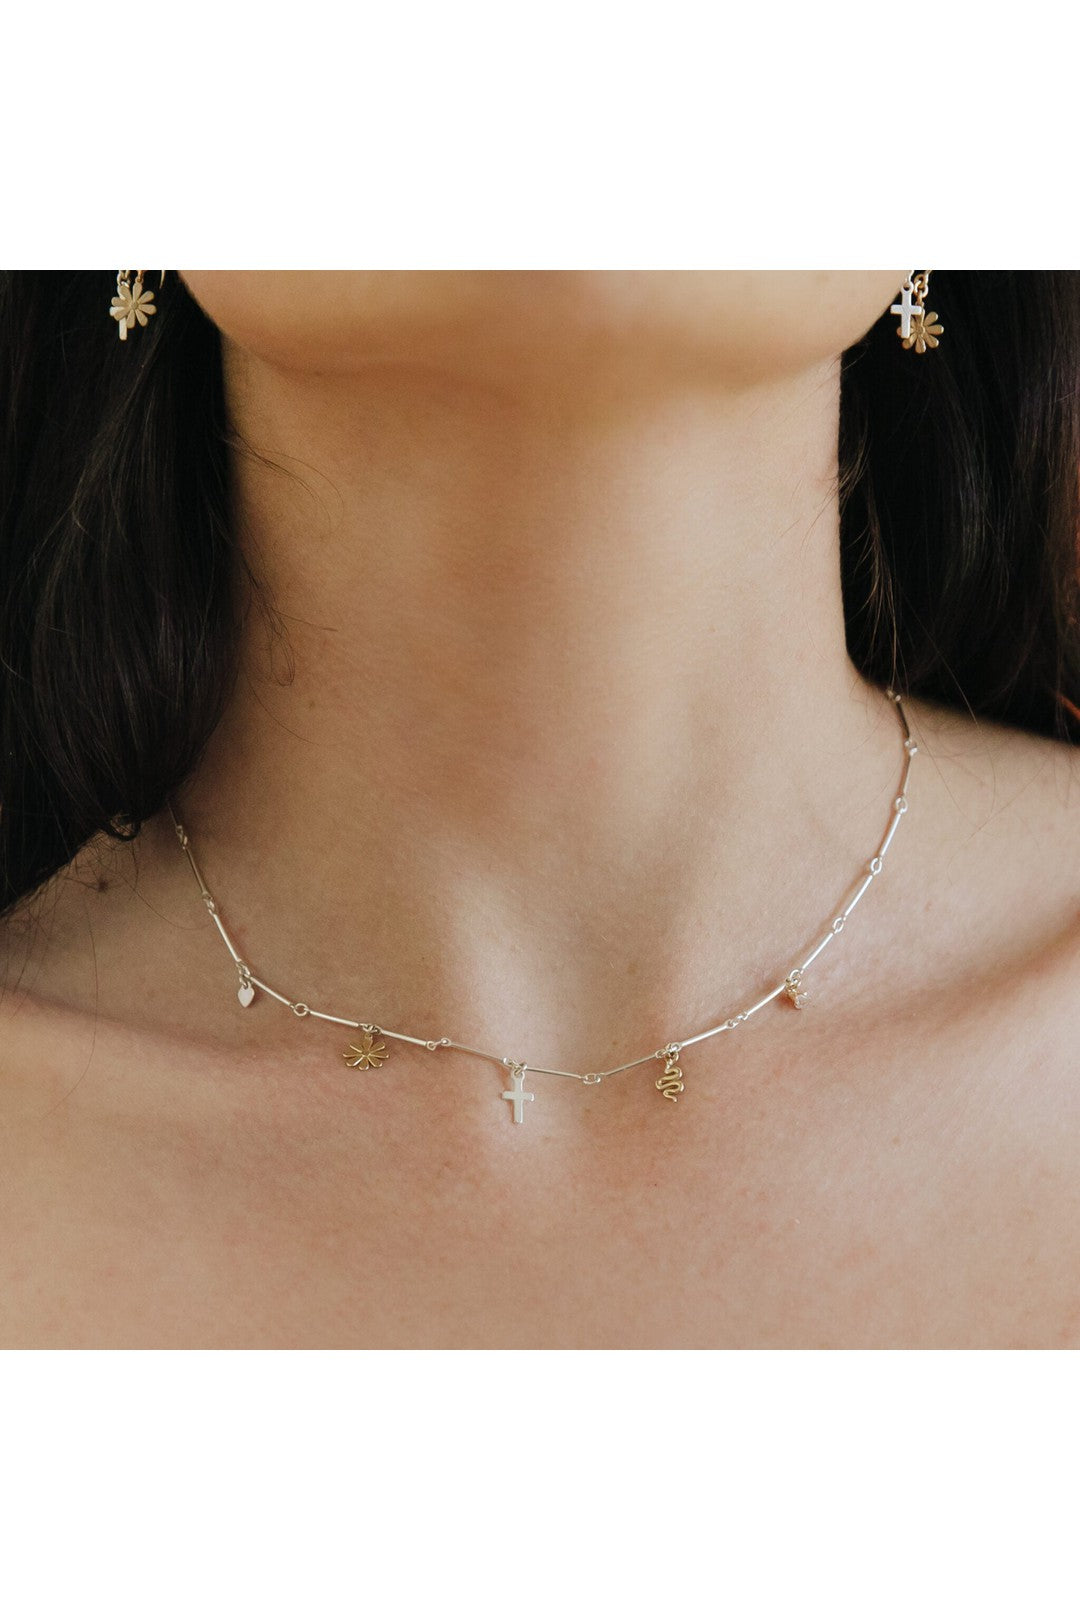 Encanto necklace, mixed metals